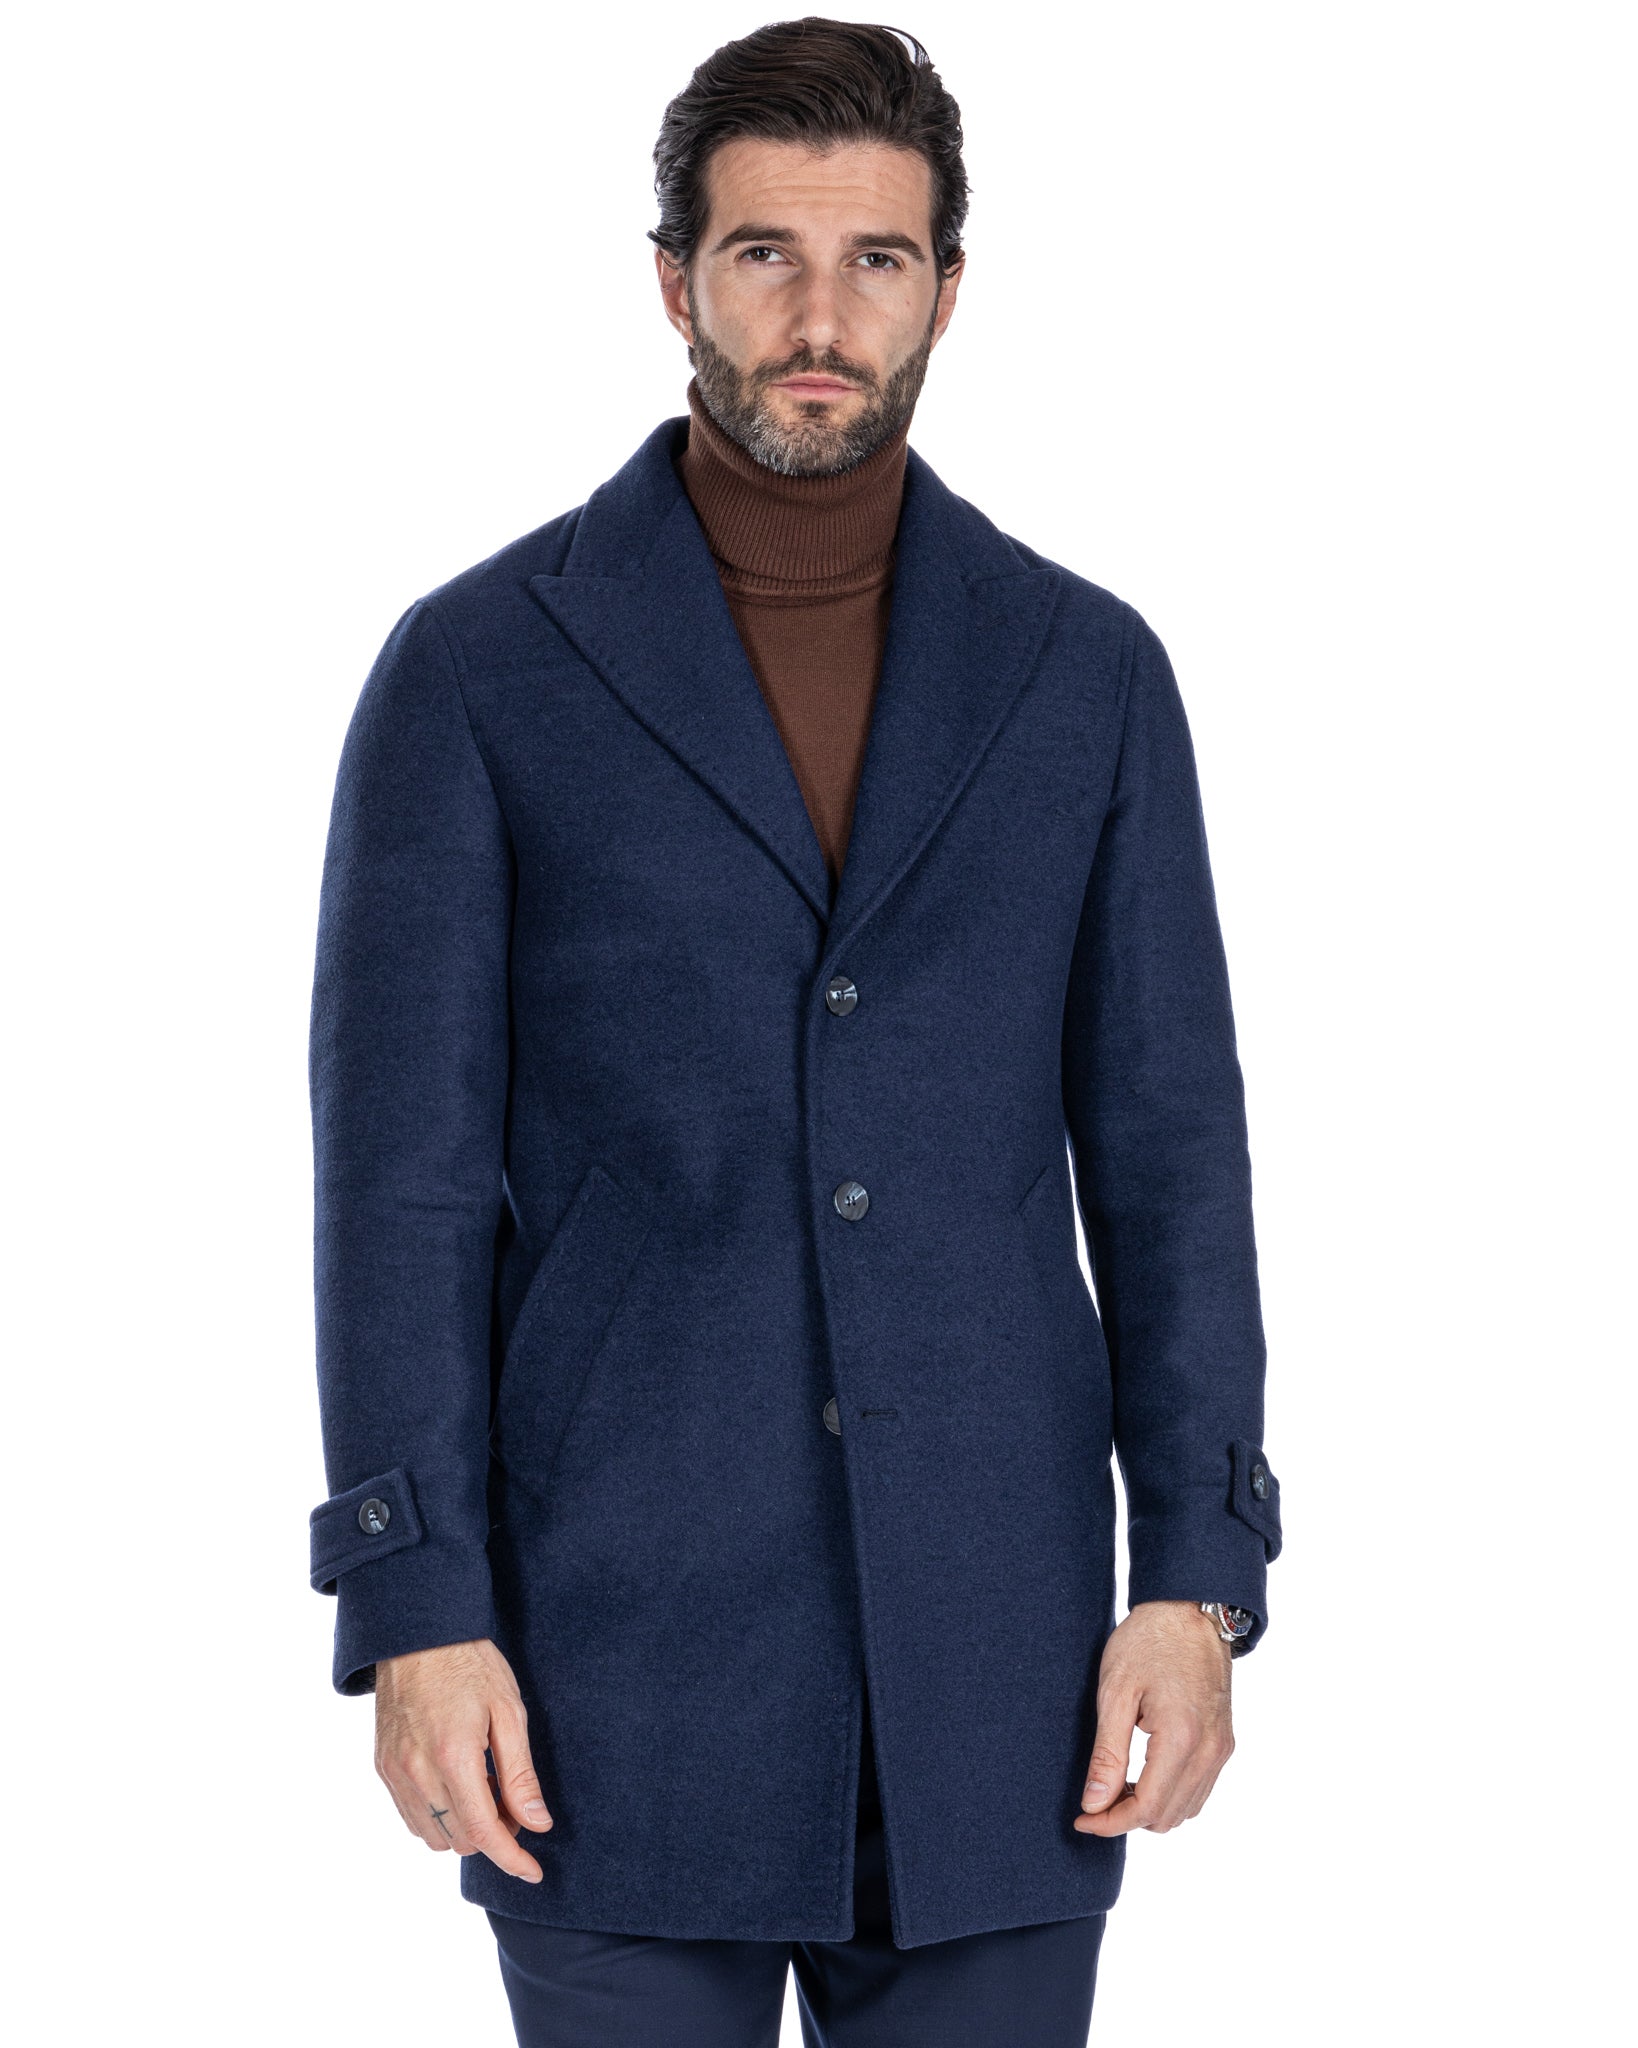 Philippe - cappotto monopetto blu